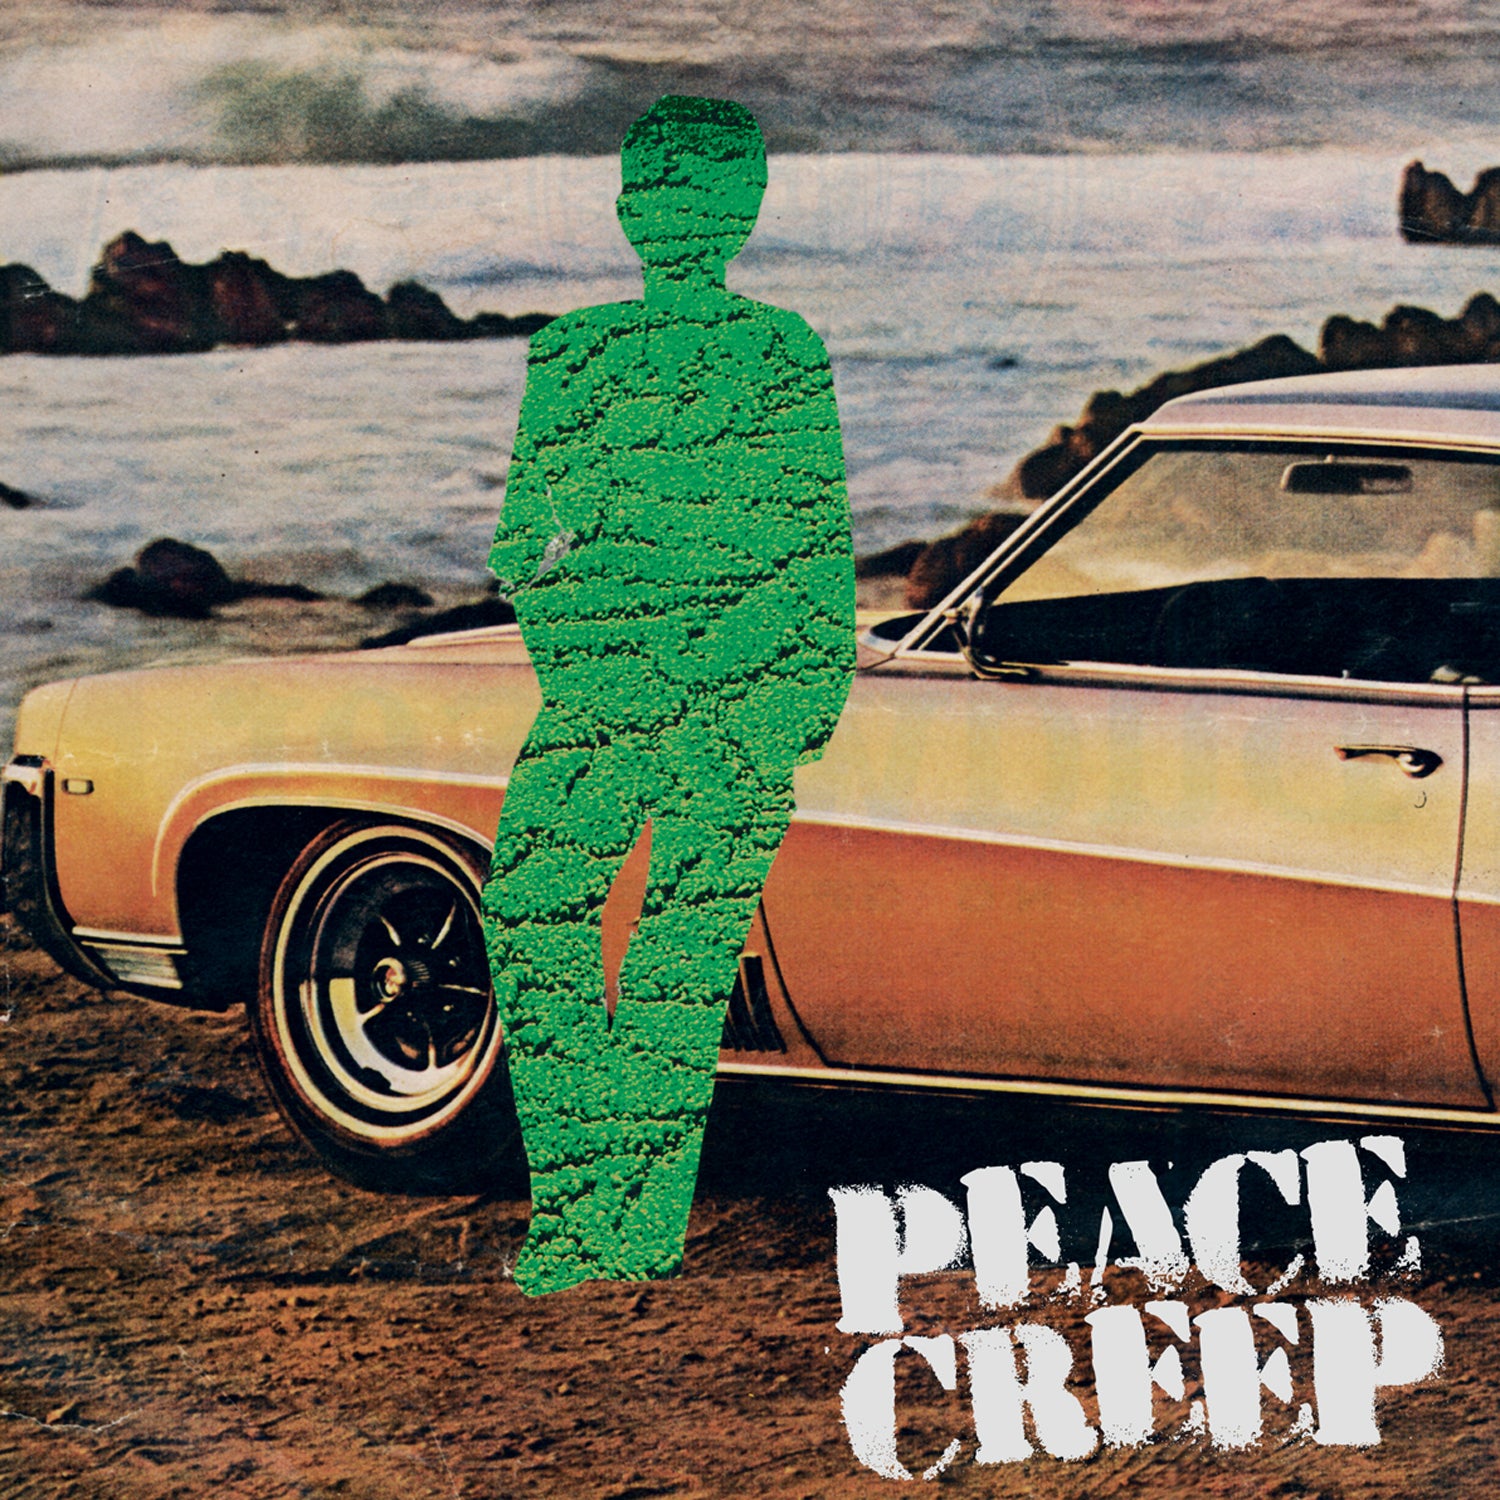 v462 - Peace Creep - "Peace Creep"